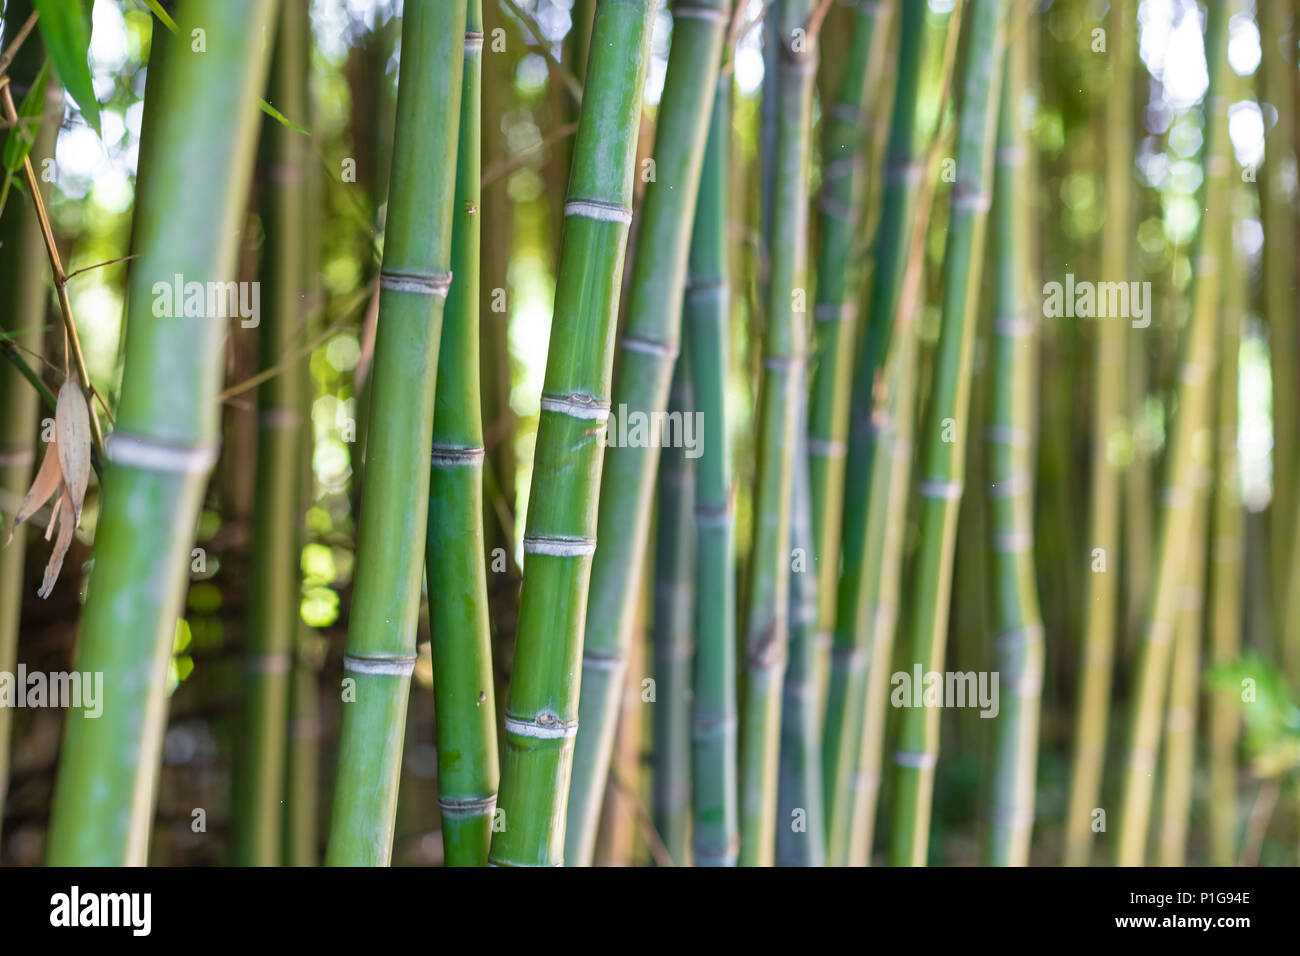 Plante arbre bambou forset, selective focus sur les tiges vertes. Banque D'Images